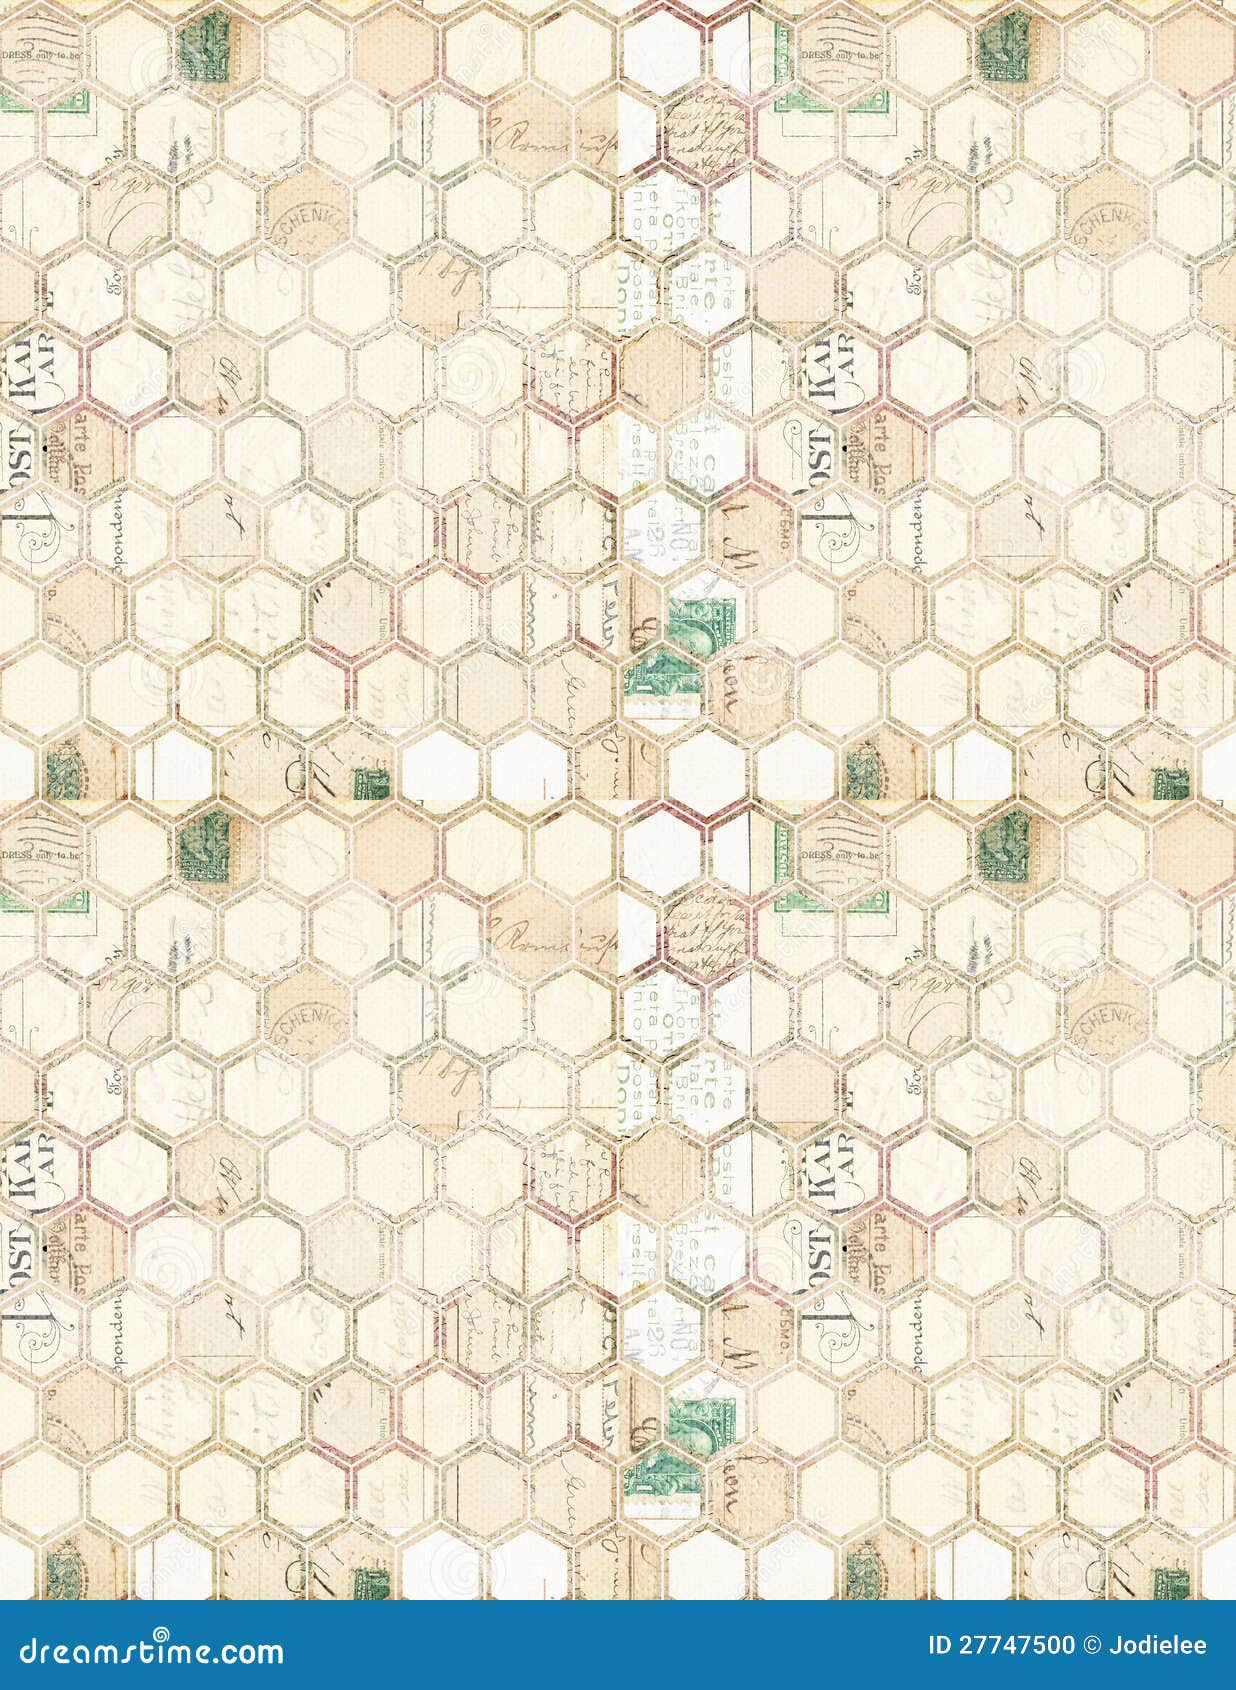 an array of hexagons